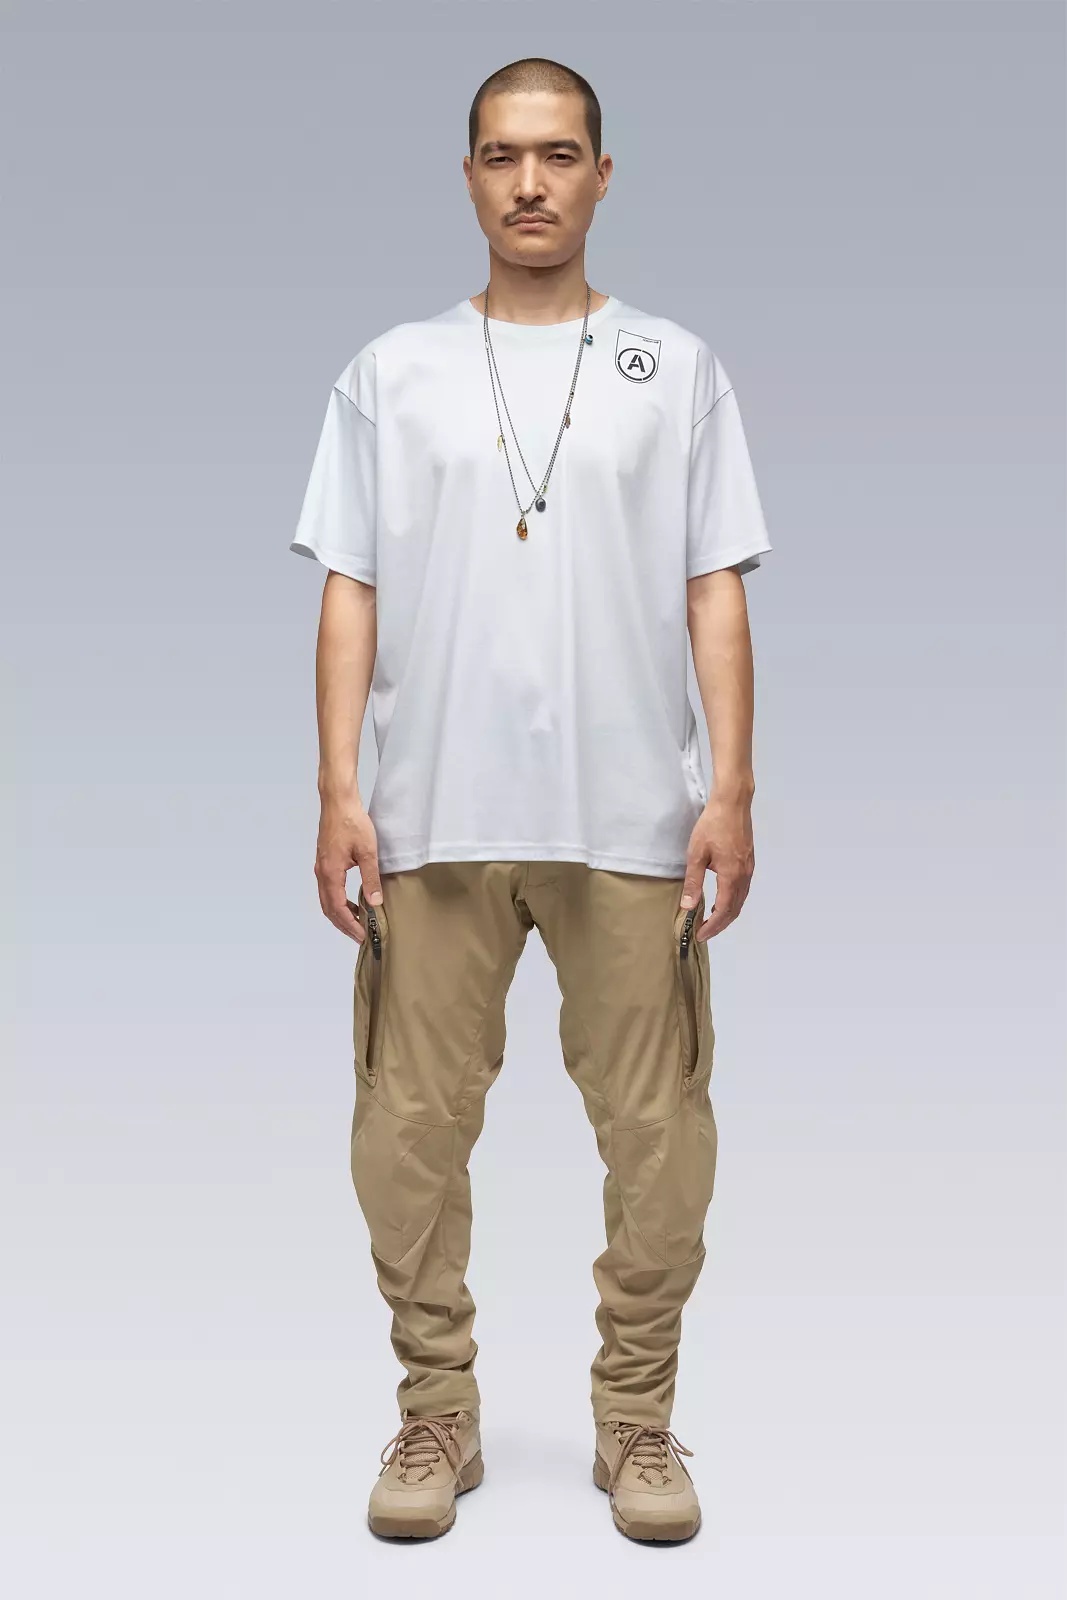 S24-PR-B 100% Cotton Mercerized Short Sleeve T-shirt White - 1